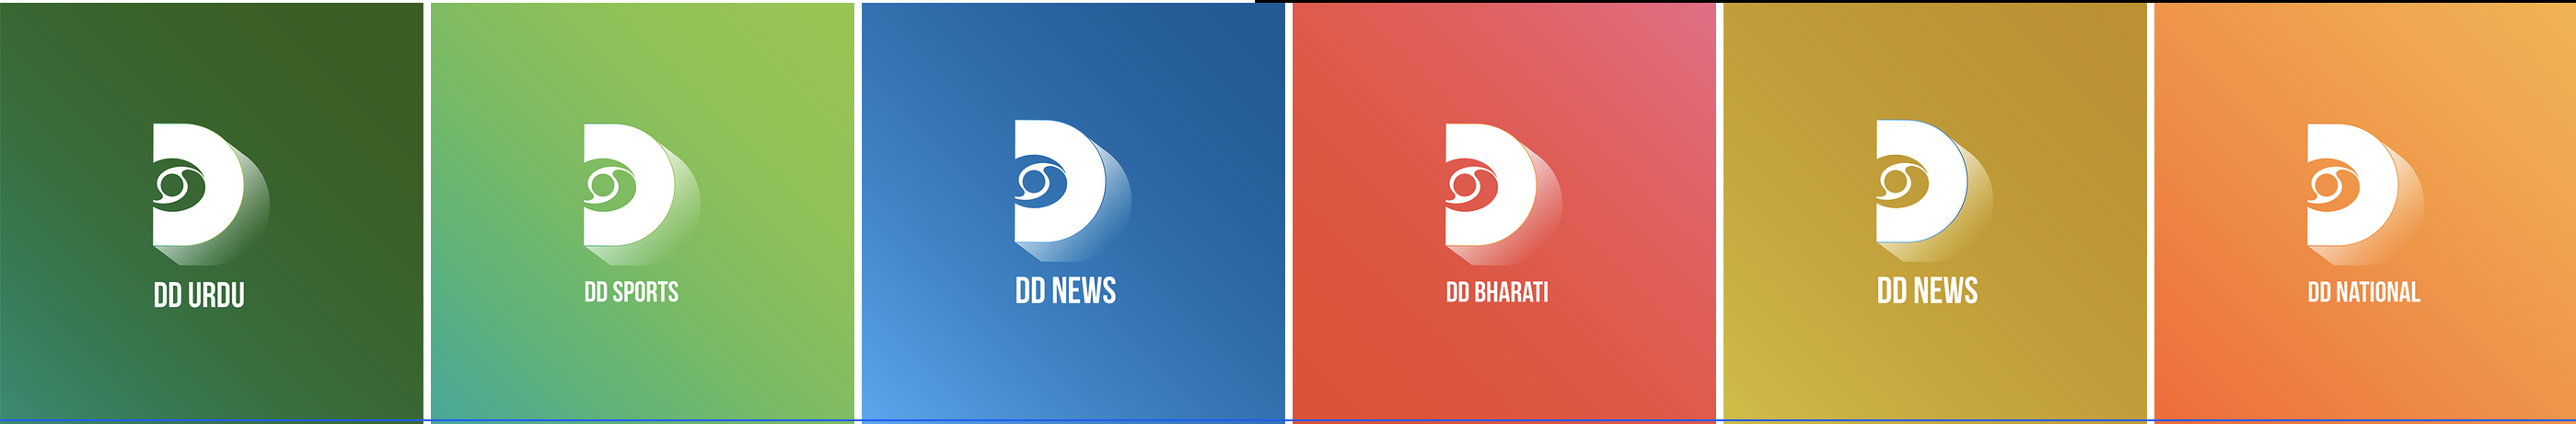 Doordarshan logo rebranding for sub channels